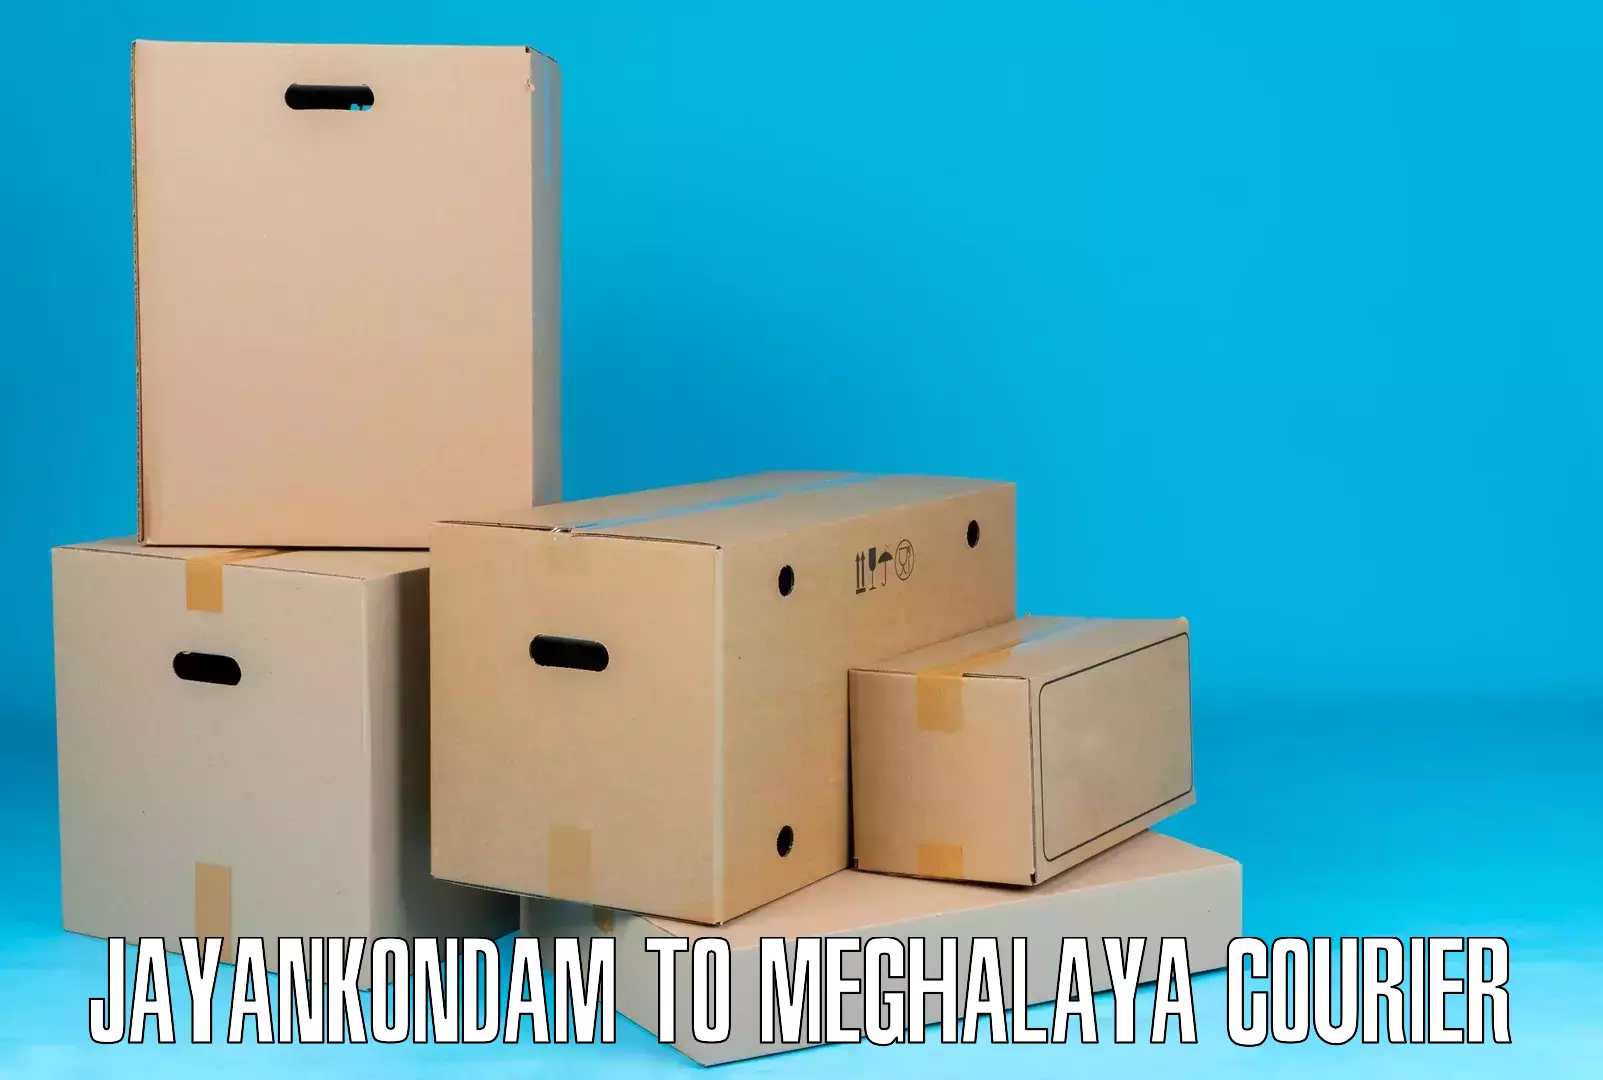 Heavyweight shipping Jayankondam to Nongpoh